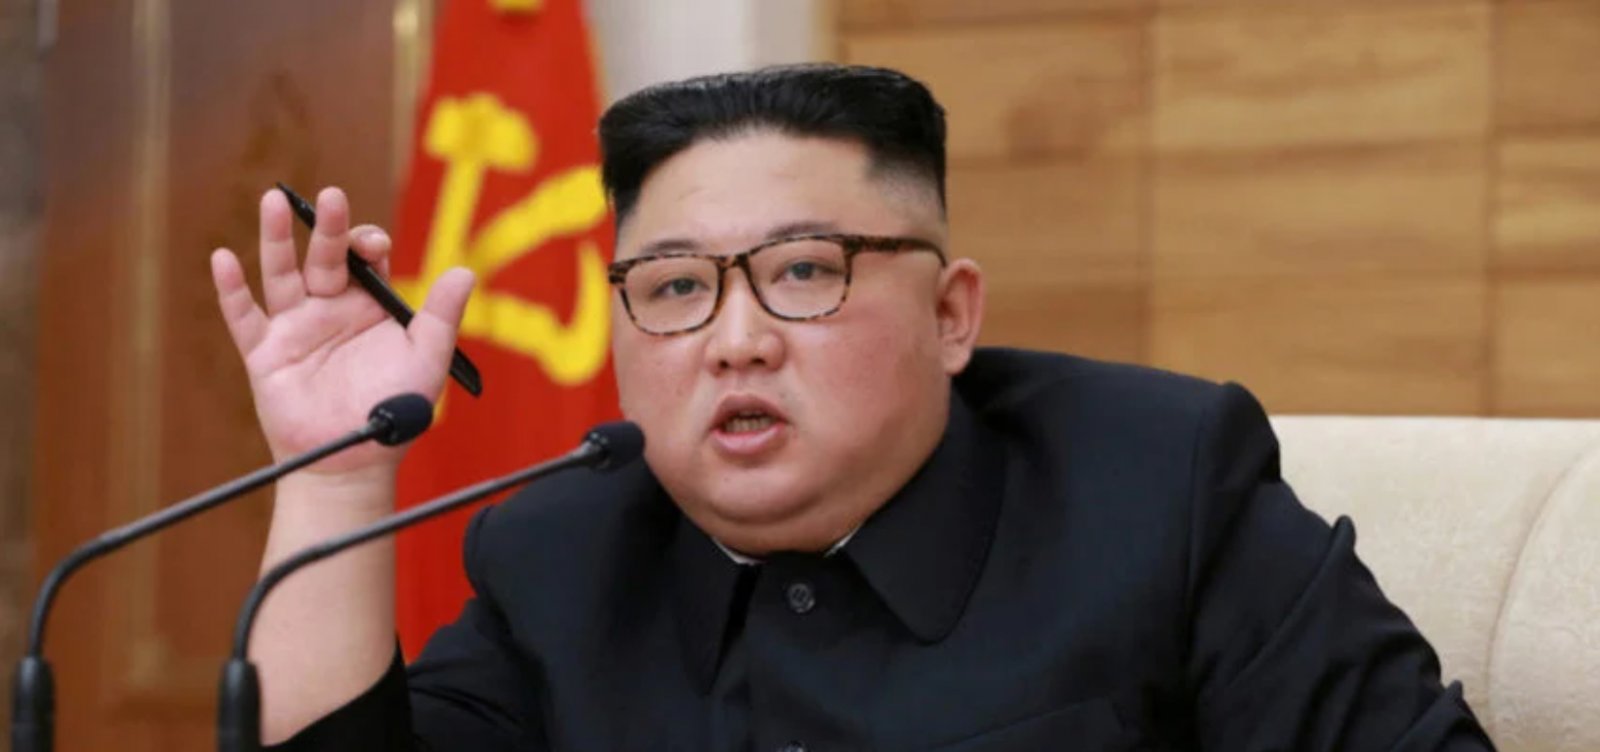 Coreia do Norte considera “grave provocação política” apelo de países vizinhos por desnuclearização 